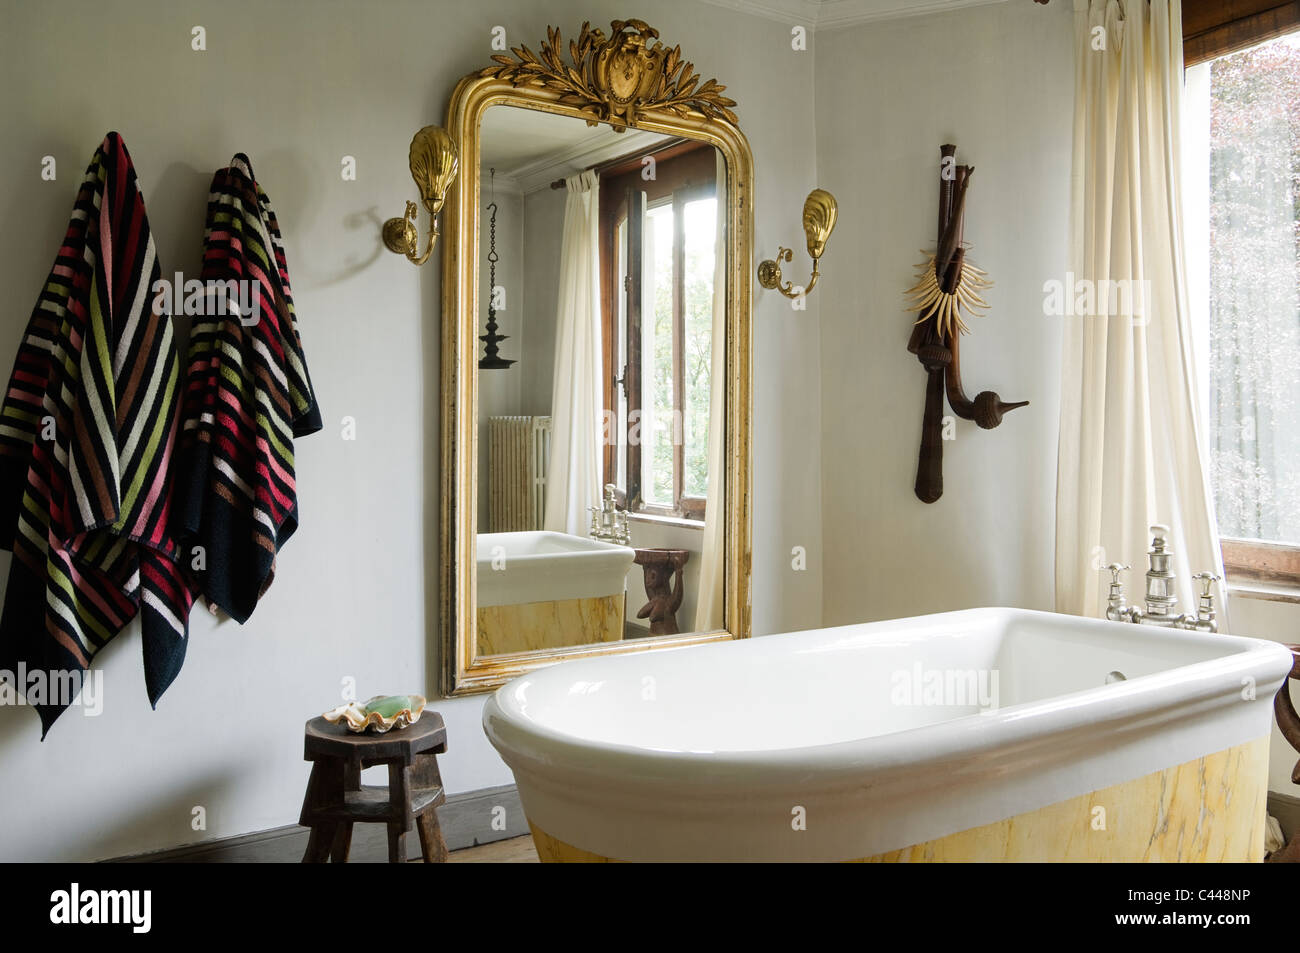 Baignoire en marbre sur pied dans la salle de bains avec parquet et grand miroir doré Banque D'Images